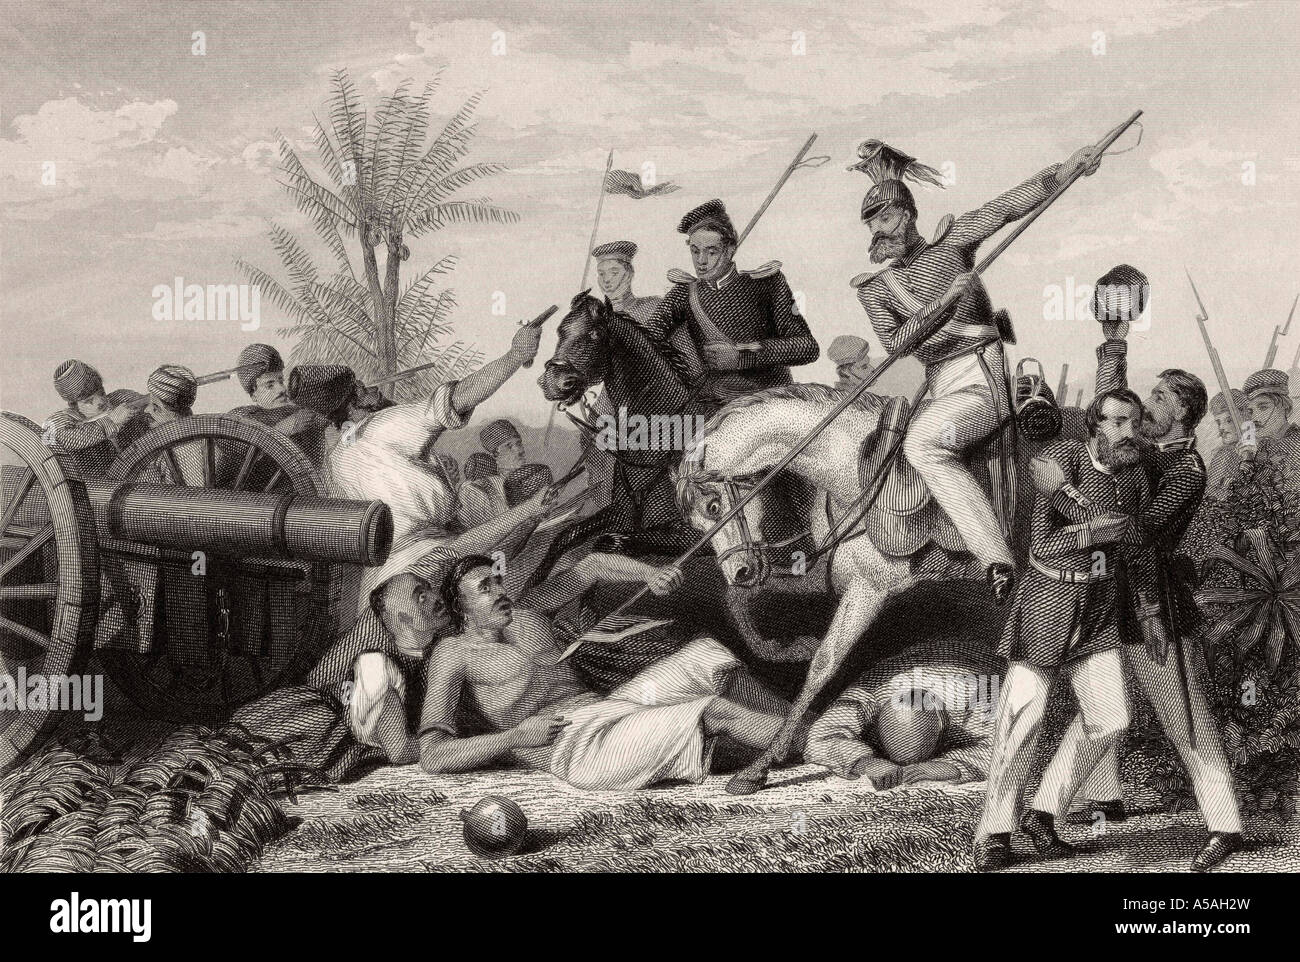 Erfassung von einem Gewehr auf Banda. Aus der Geschichte der Indischen Meuterei 1858 veröffentlicht. Stockfoto